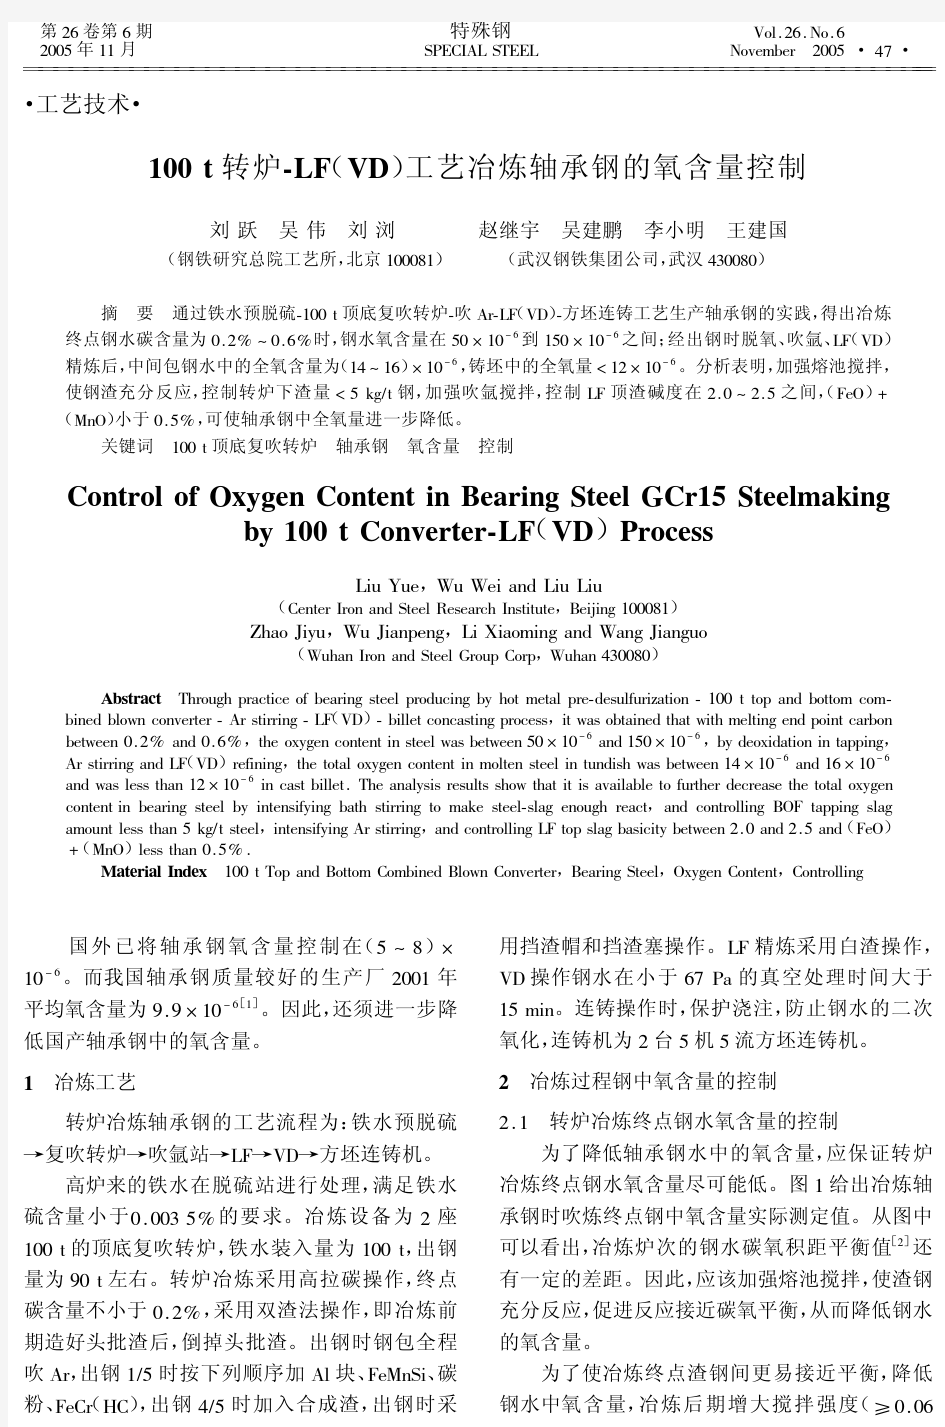 100 t转炉-LF(VD)工艺冶炼轴承钢的氧含量控制